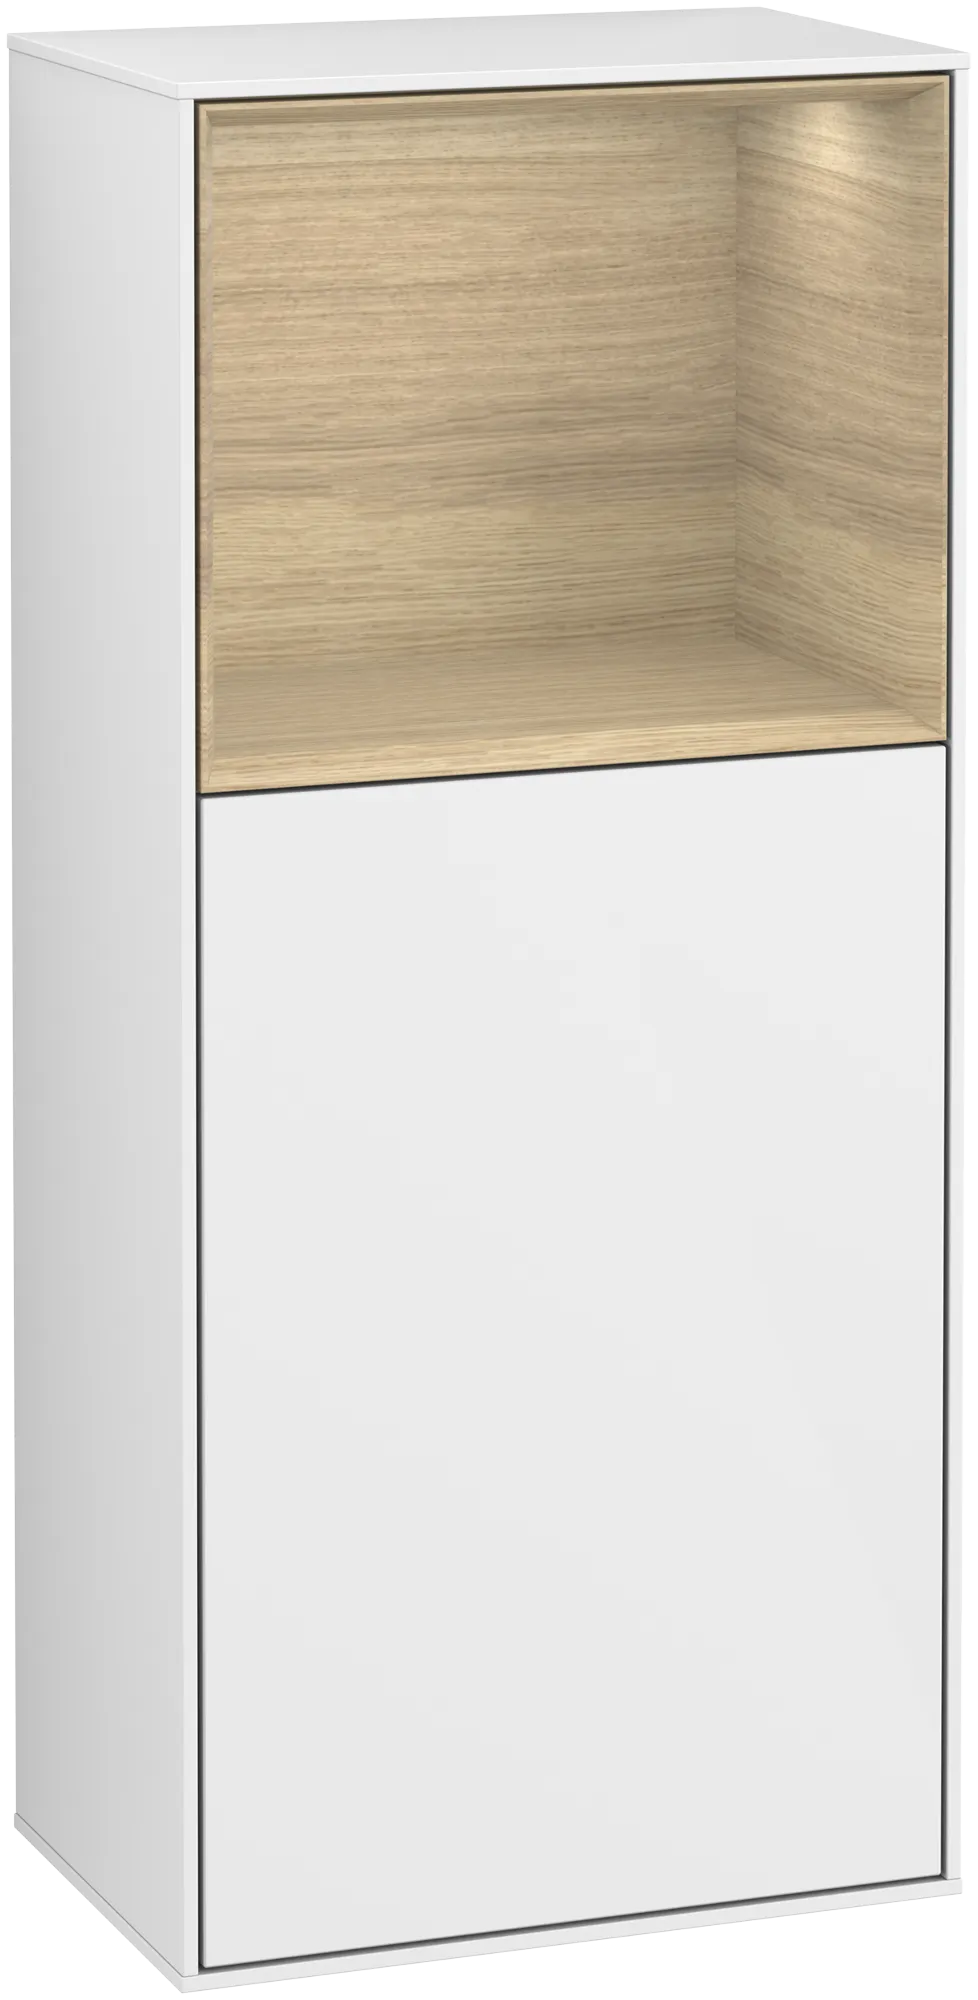 Bild von VILLEROY BOCH Finion Seitenschrank, mit Beleuchtung, 1 Tür, 418 x 936 x 270 mm, Glossy White Lacquer / Oak Veneer #G510PCGF